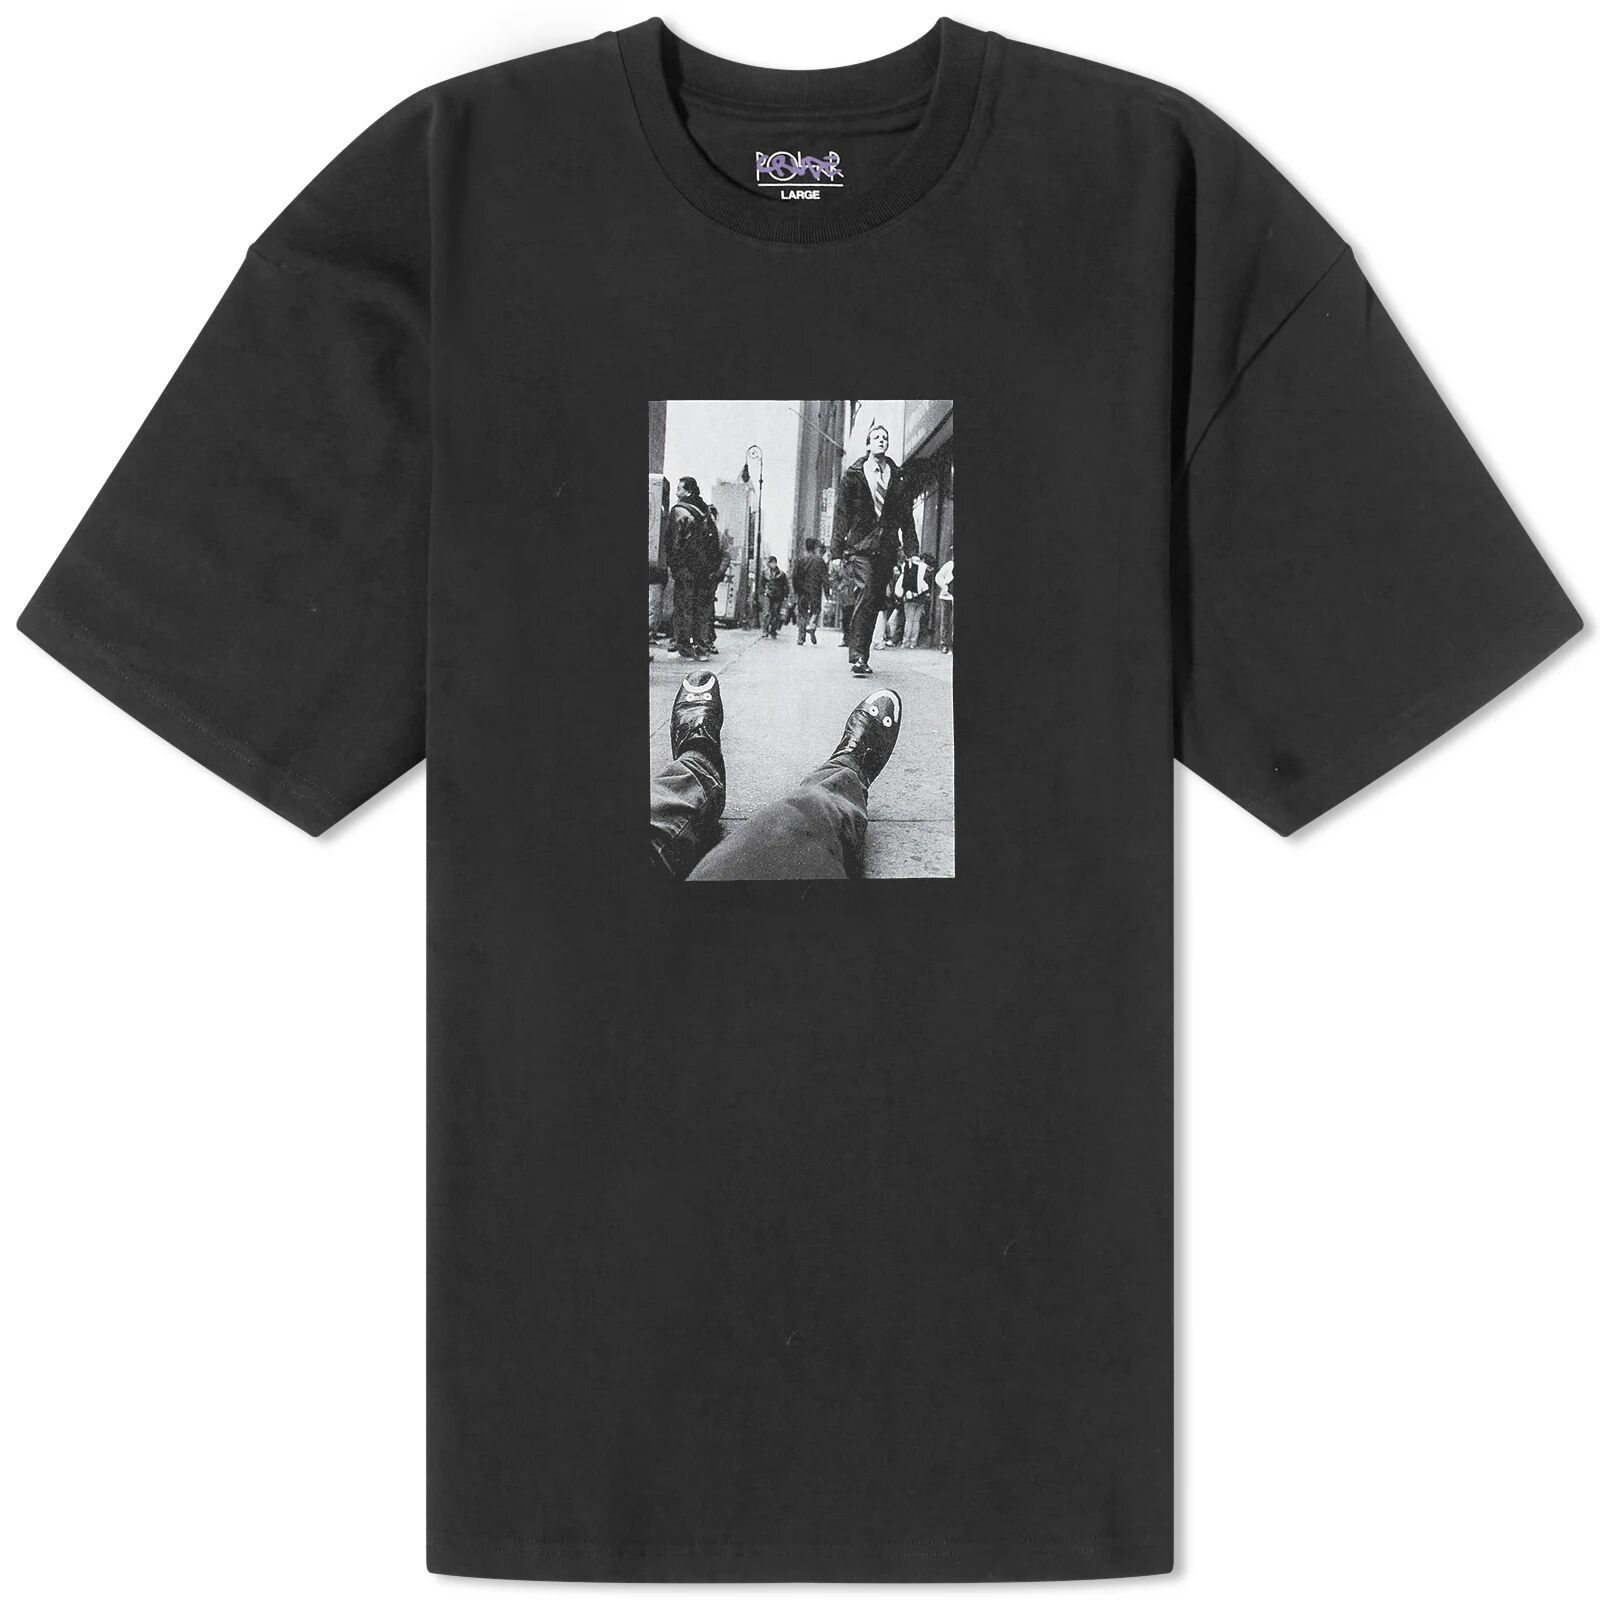 Polar Skate Co. Men's Happy Sad T-Shirt in Black, Size Small